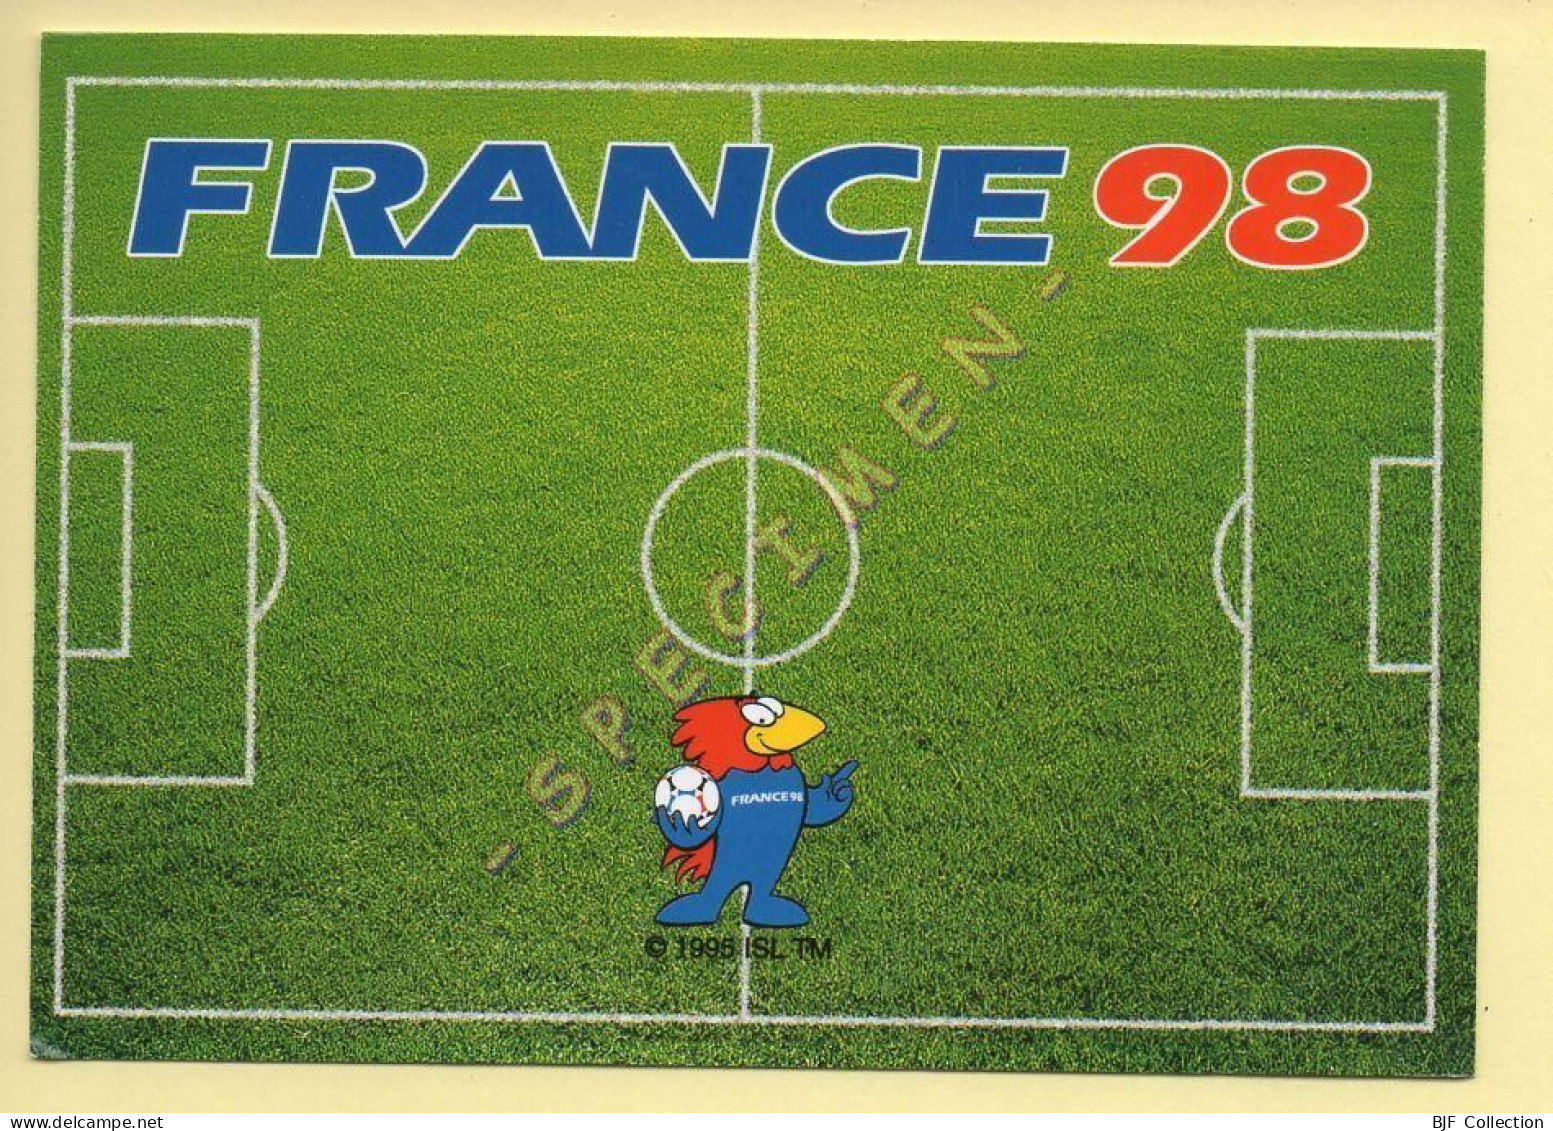 FRANCE 98 – Carte Collector N° 13/18 – FOOTIX – Coupe Du Monde (voir Scan Recto/verso) - Fussball